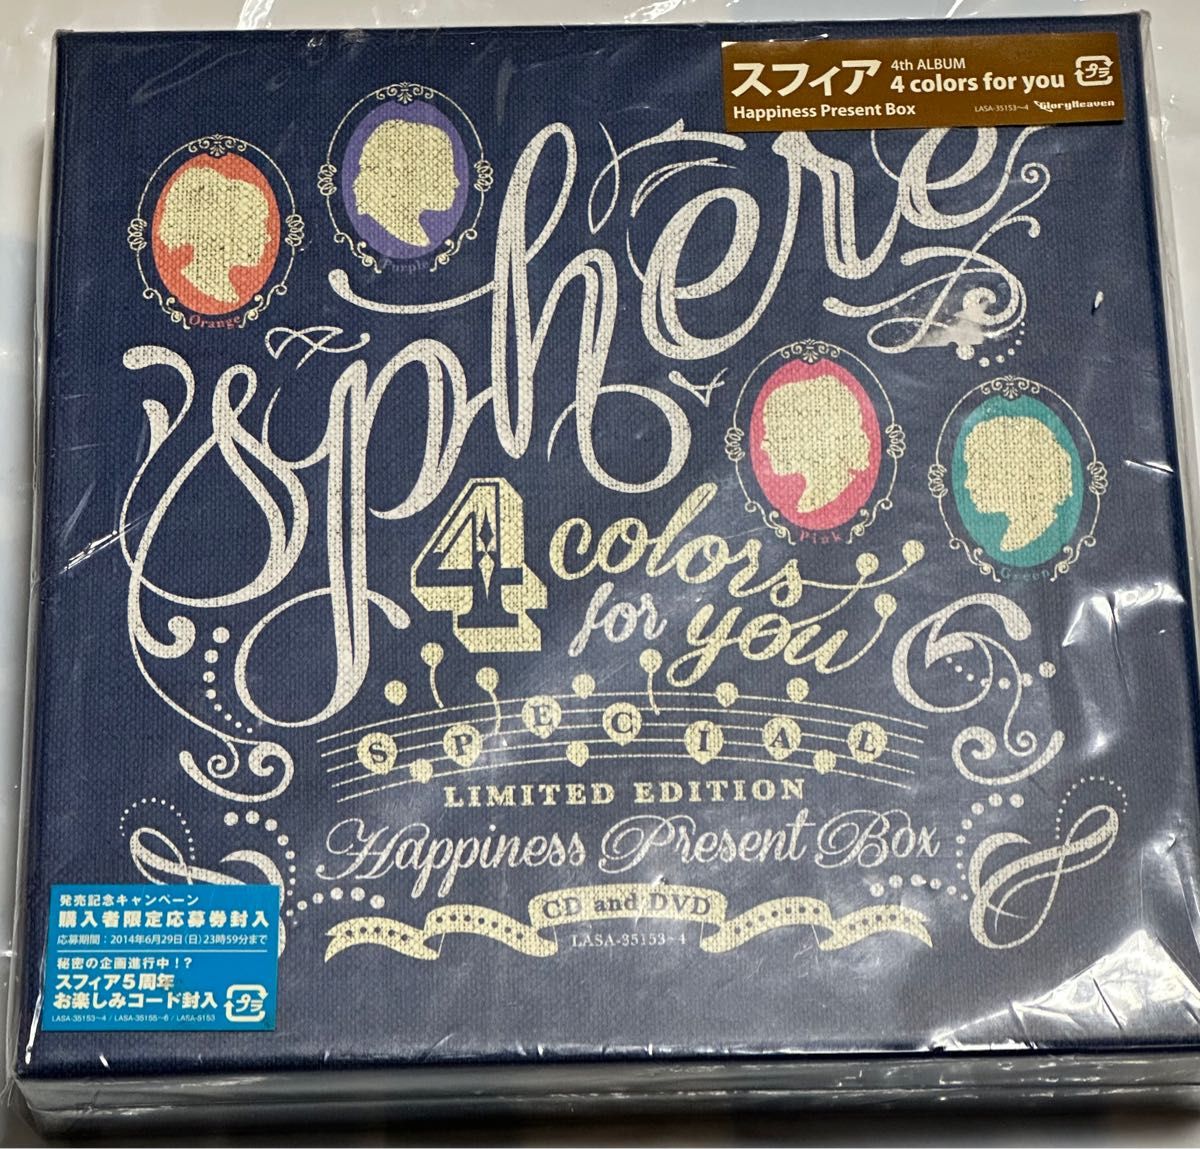 スフィア／4 colors for you (Happiness Present Box) [CD+DVD] 初回限定盤